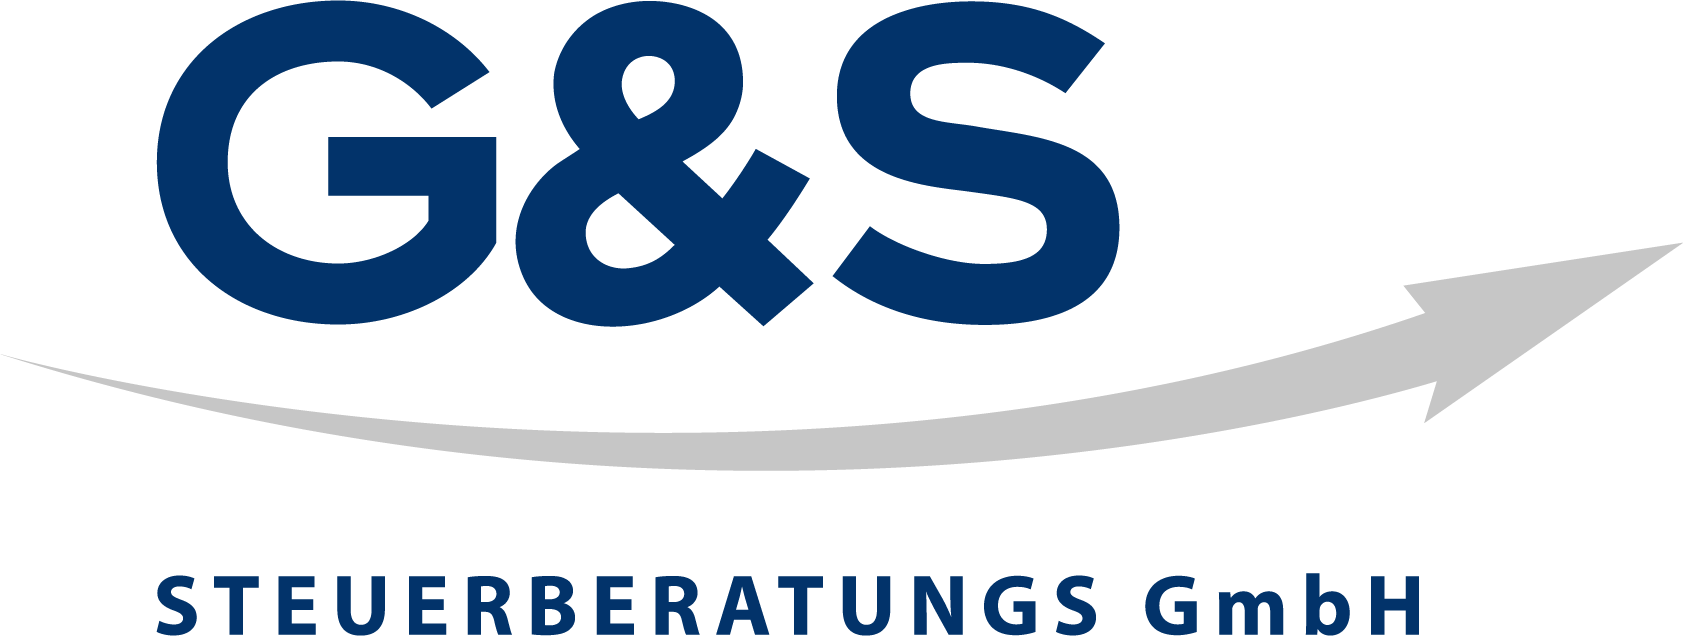 Logo: G & S